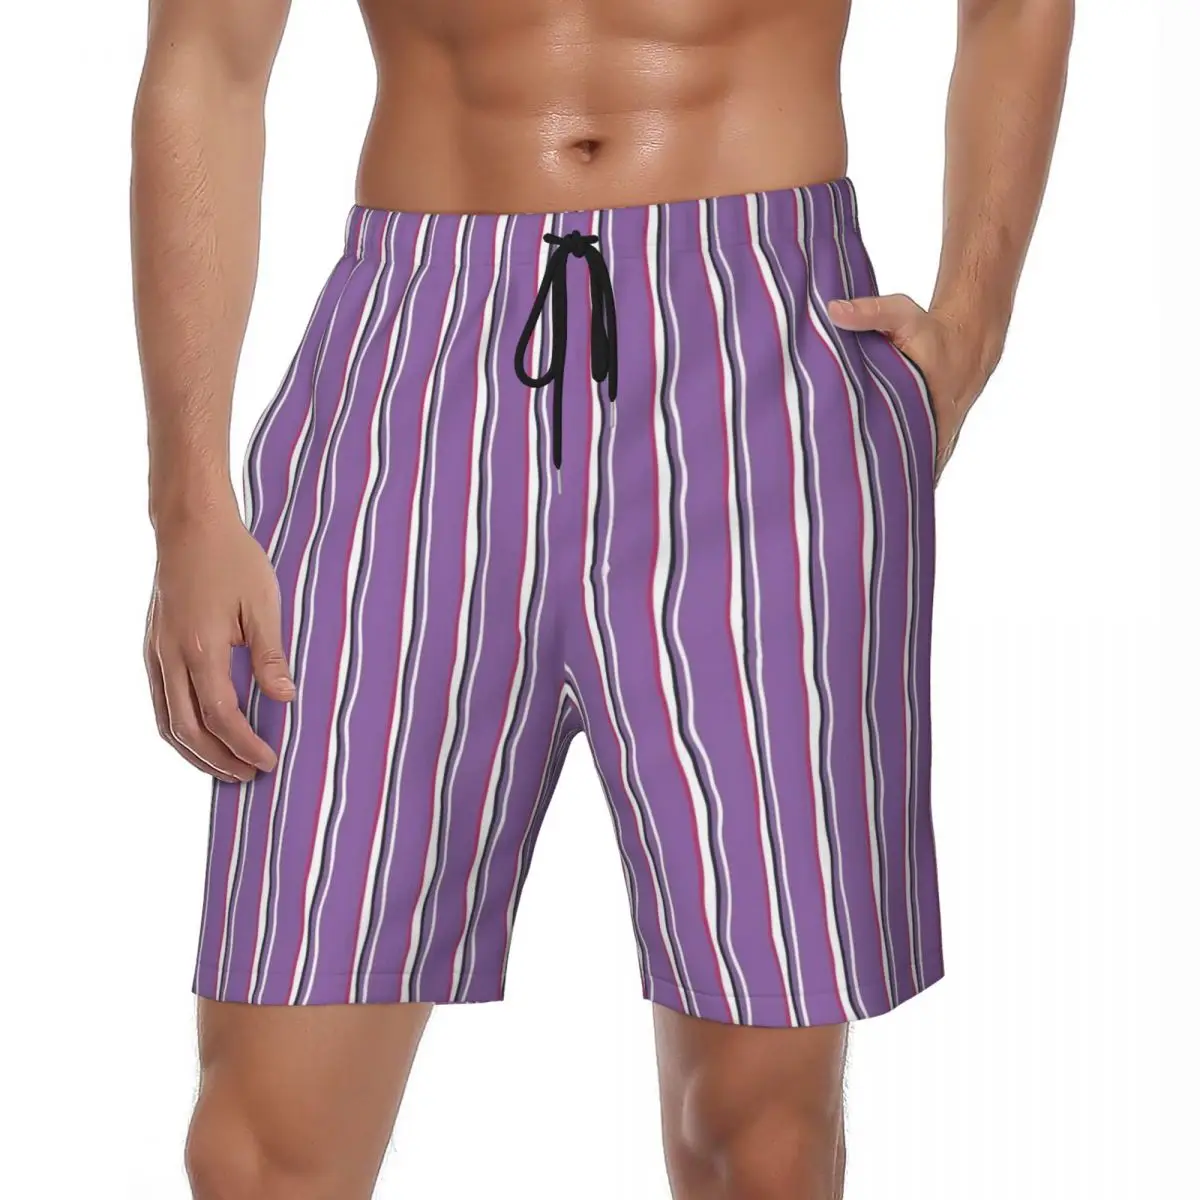 

Шорты мужские пляжные в полоску, стильные плавки, быстросохнущие Короткие штаны для бега, с принтом, фиолетовые и белые